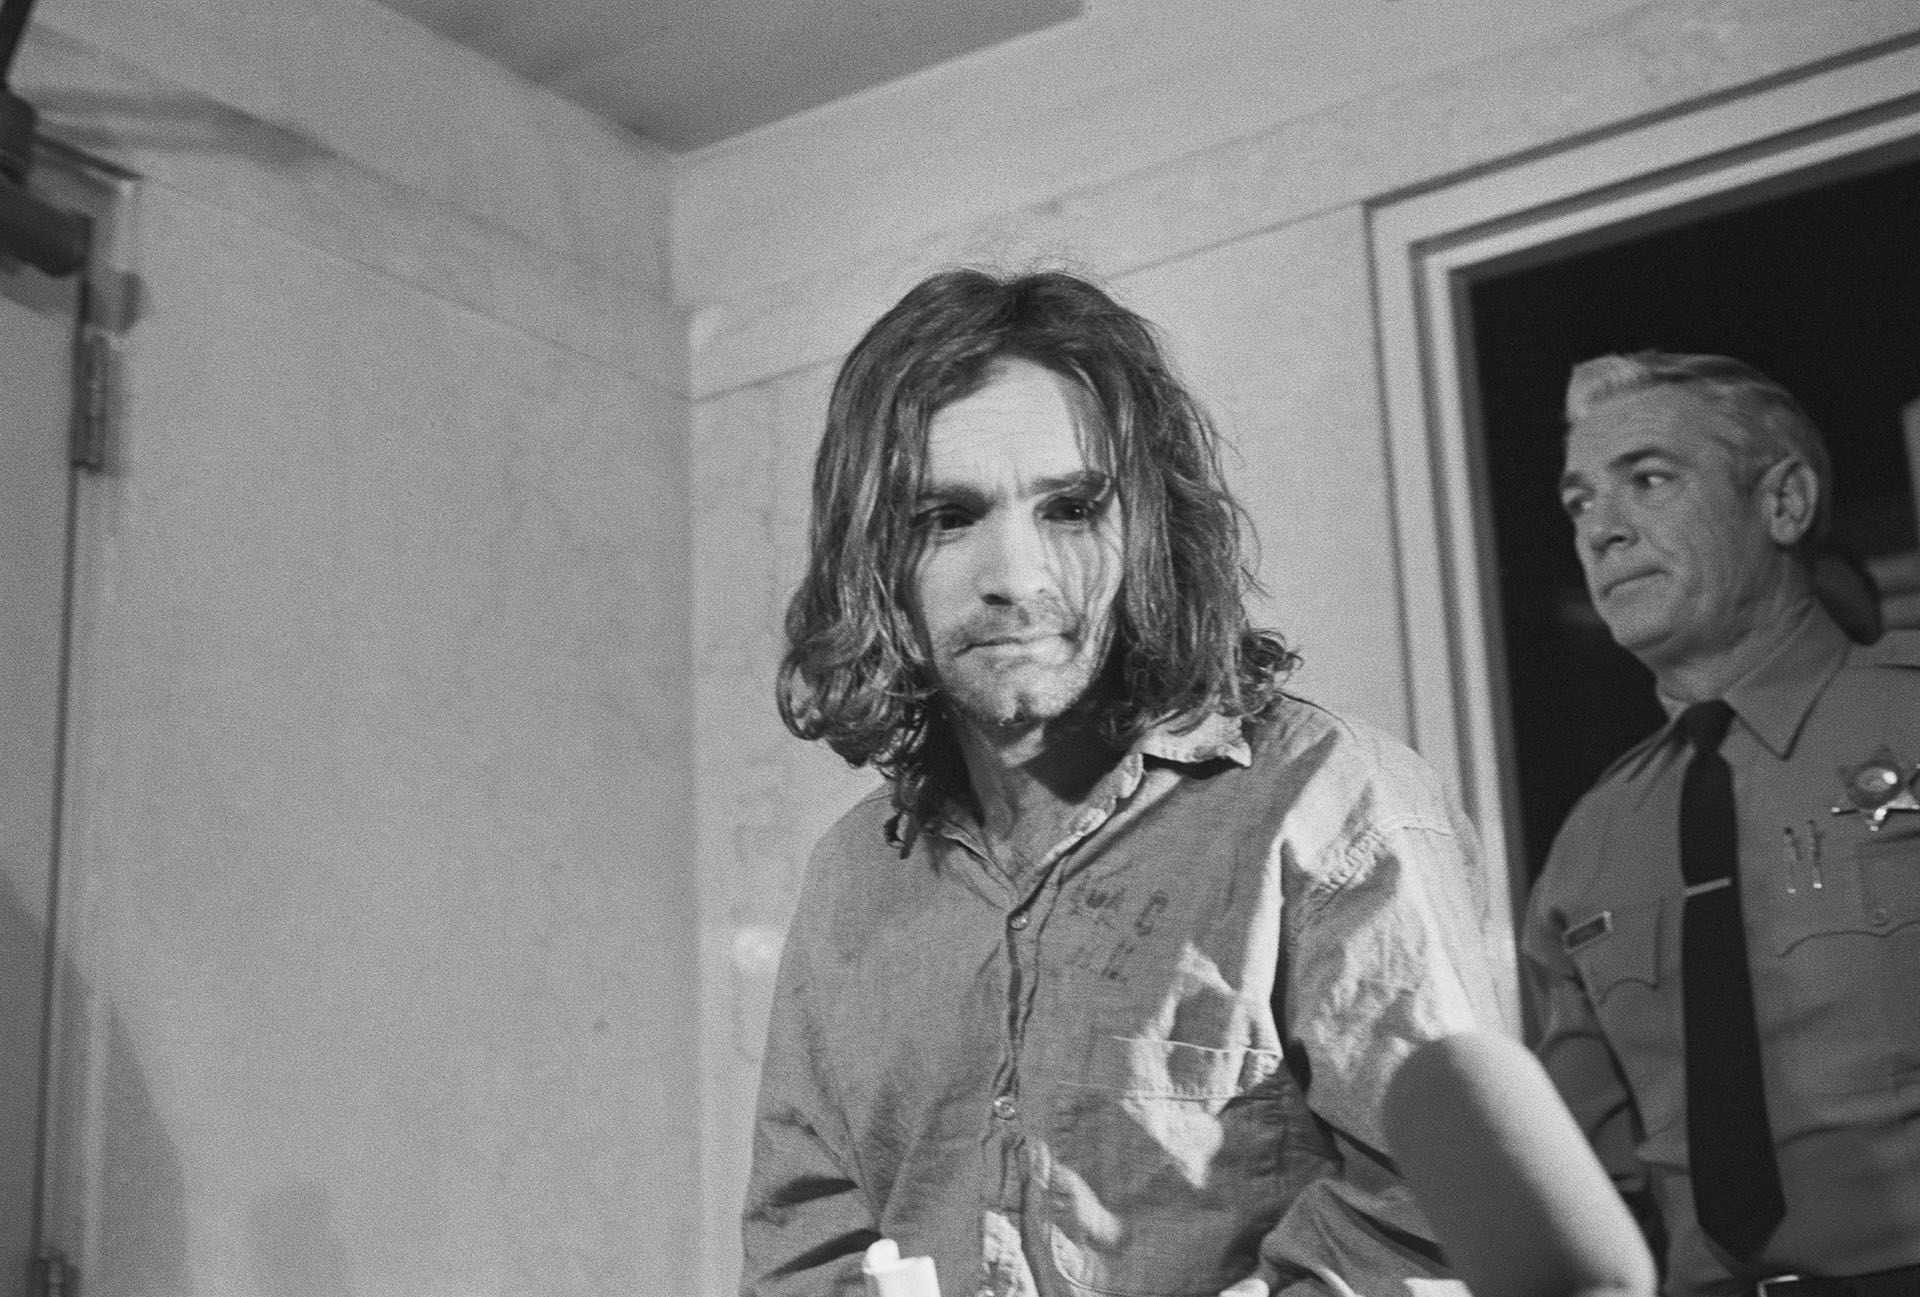 El 25 de enero de 1971 Charles Manson fue condenado a muerte; esa pena luego se transformó en cadena perpetua